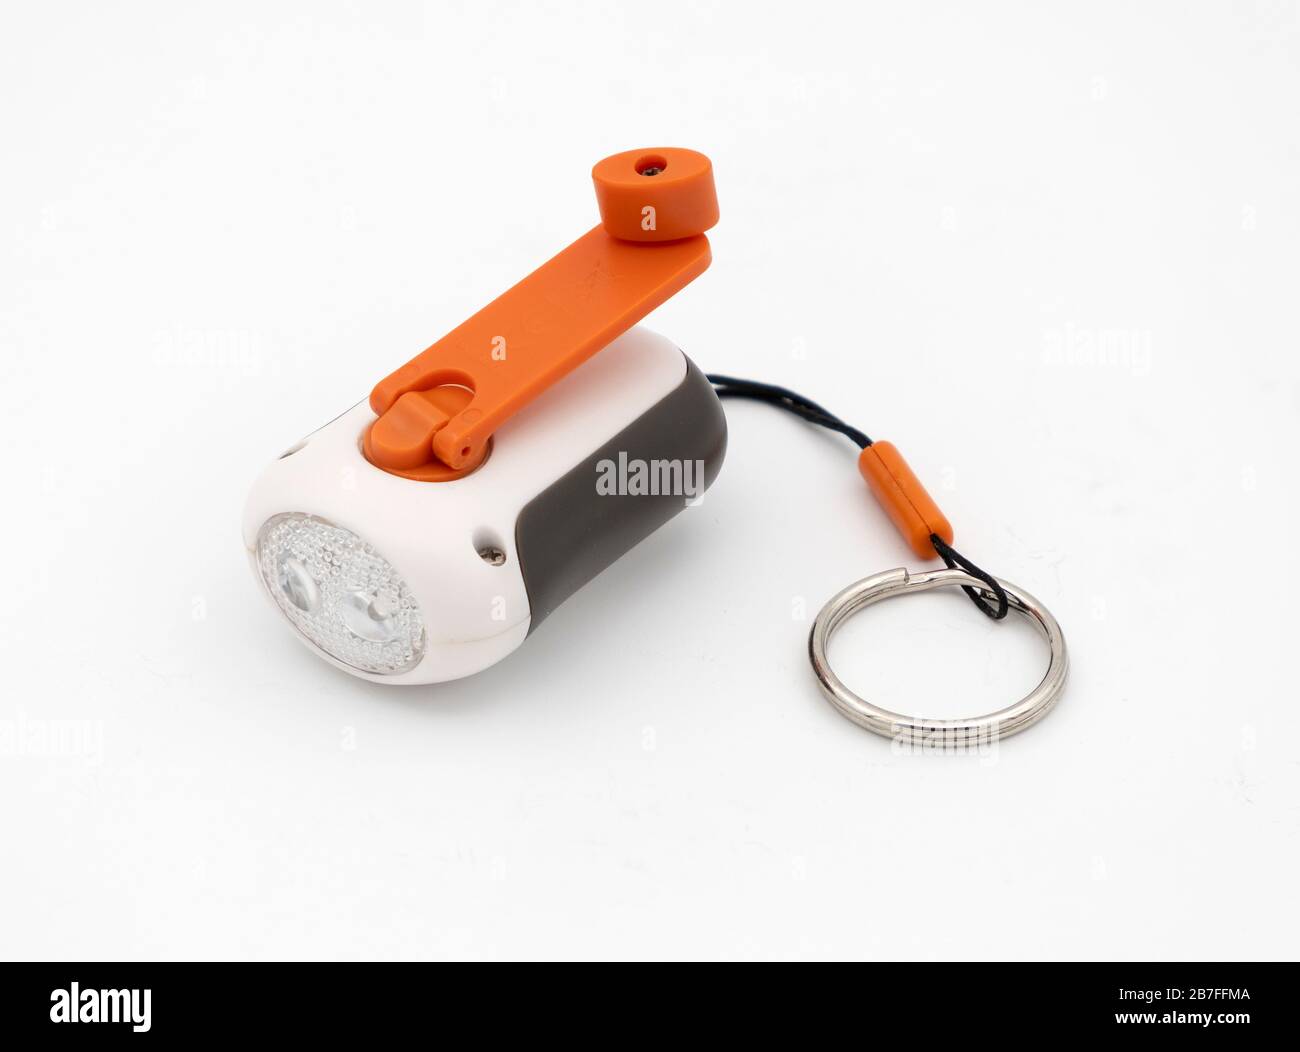 Petite lampe de poche de démarrage à chaîne porte-clés avec bouton marche/arrêt orange isolé sur fond blanc Banque D'Images